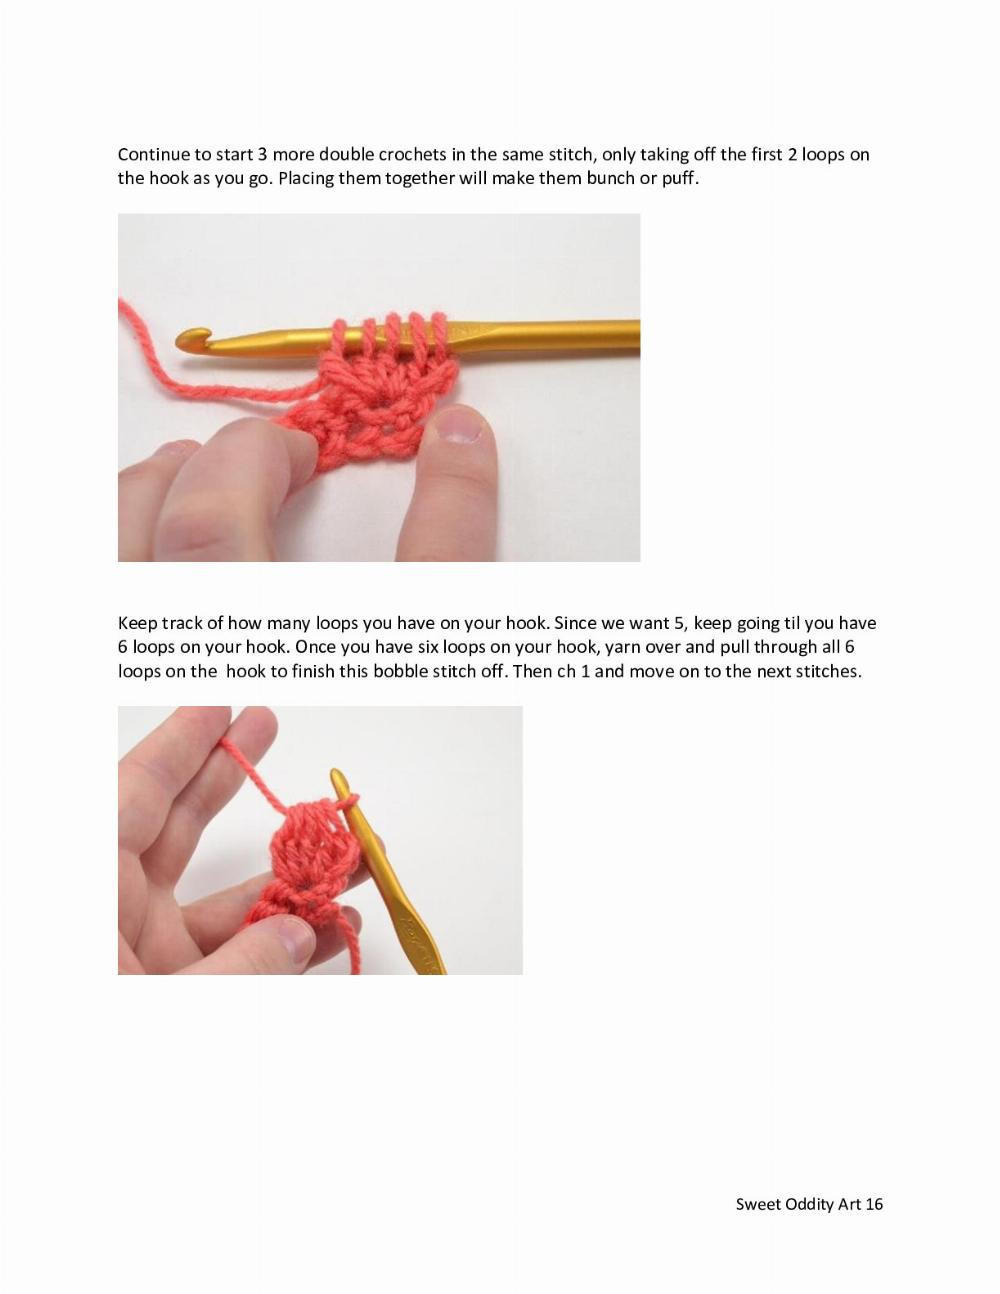 Mini Griffin Crochet Pattern